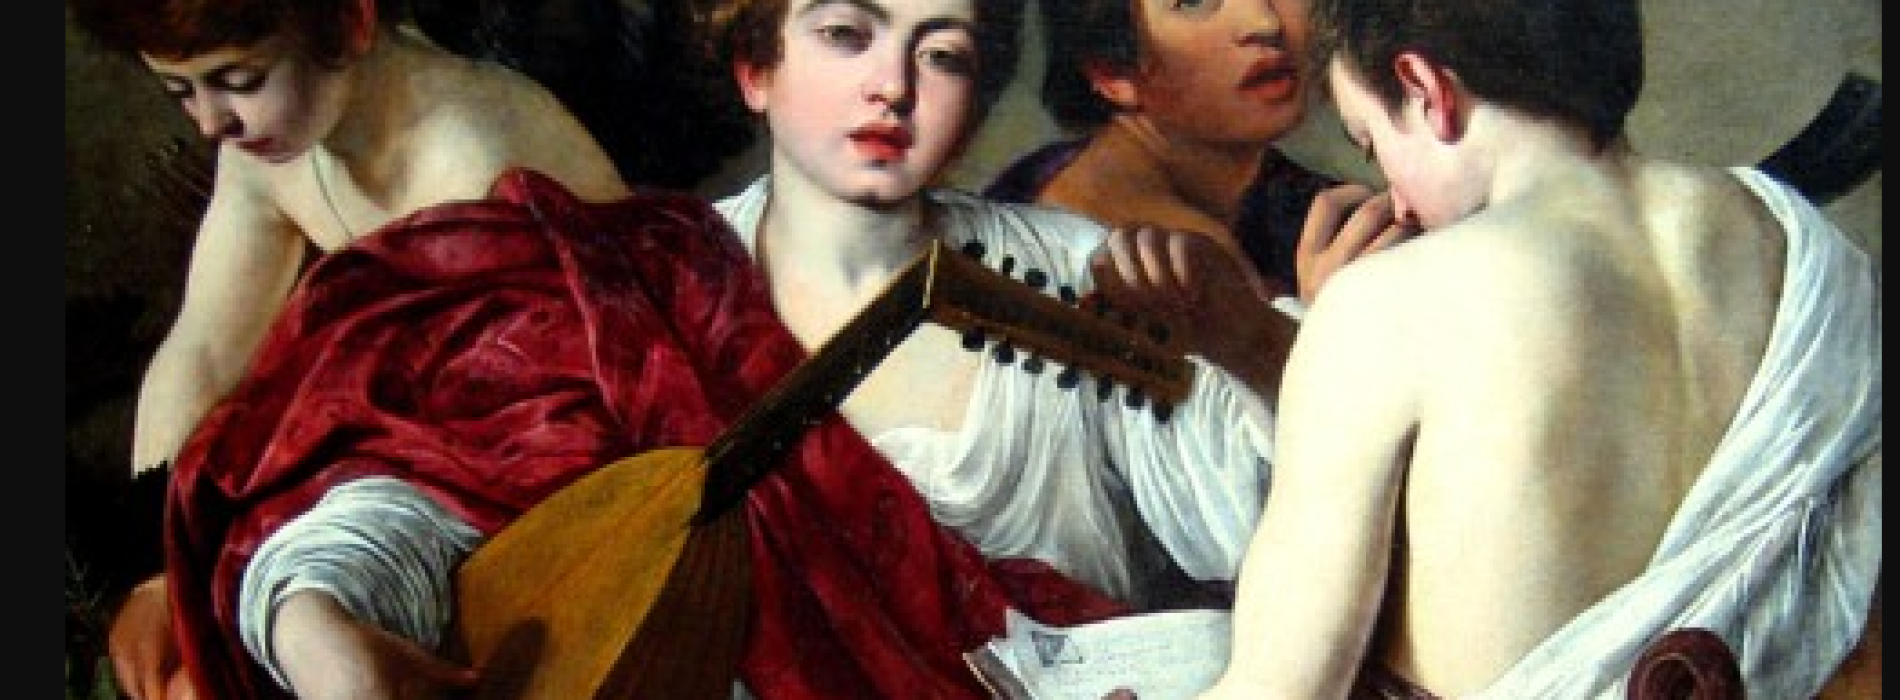 L’ospite illustre a Palazzo Zevallos,  “I musici” di Caravaggio